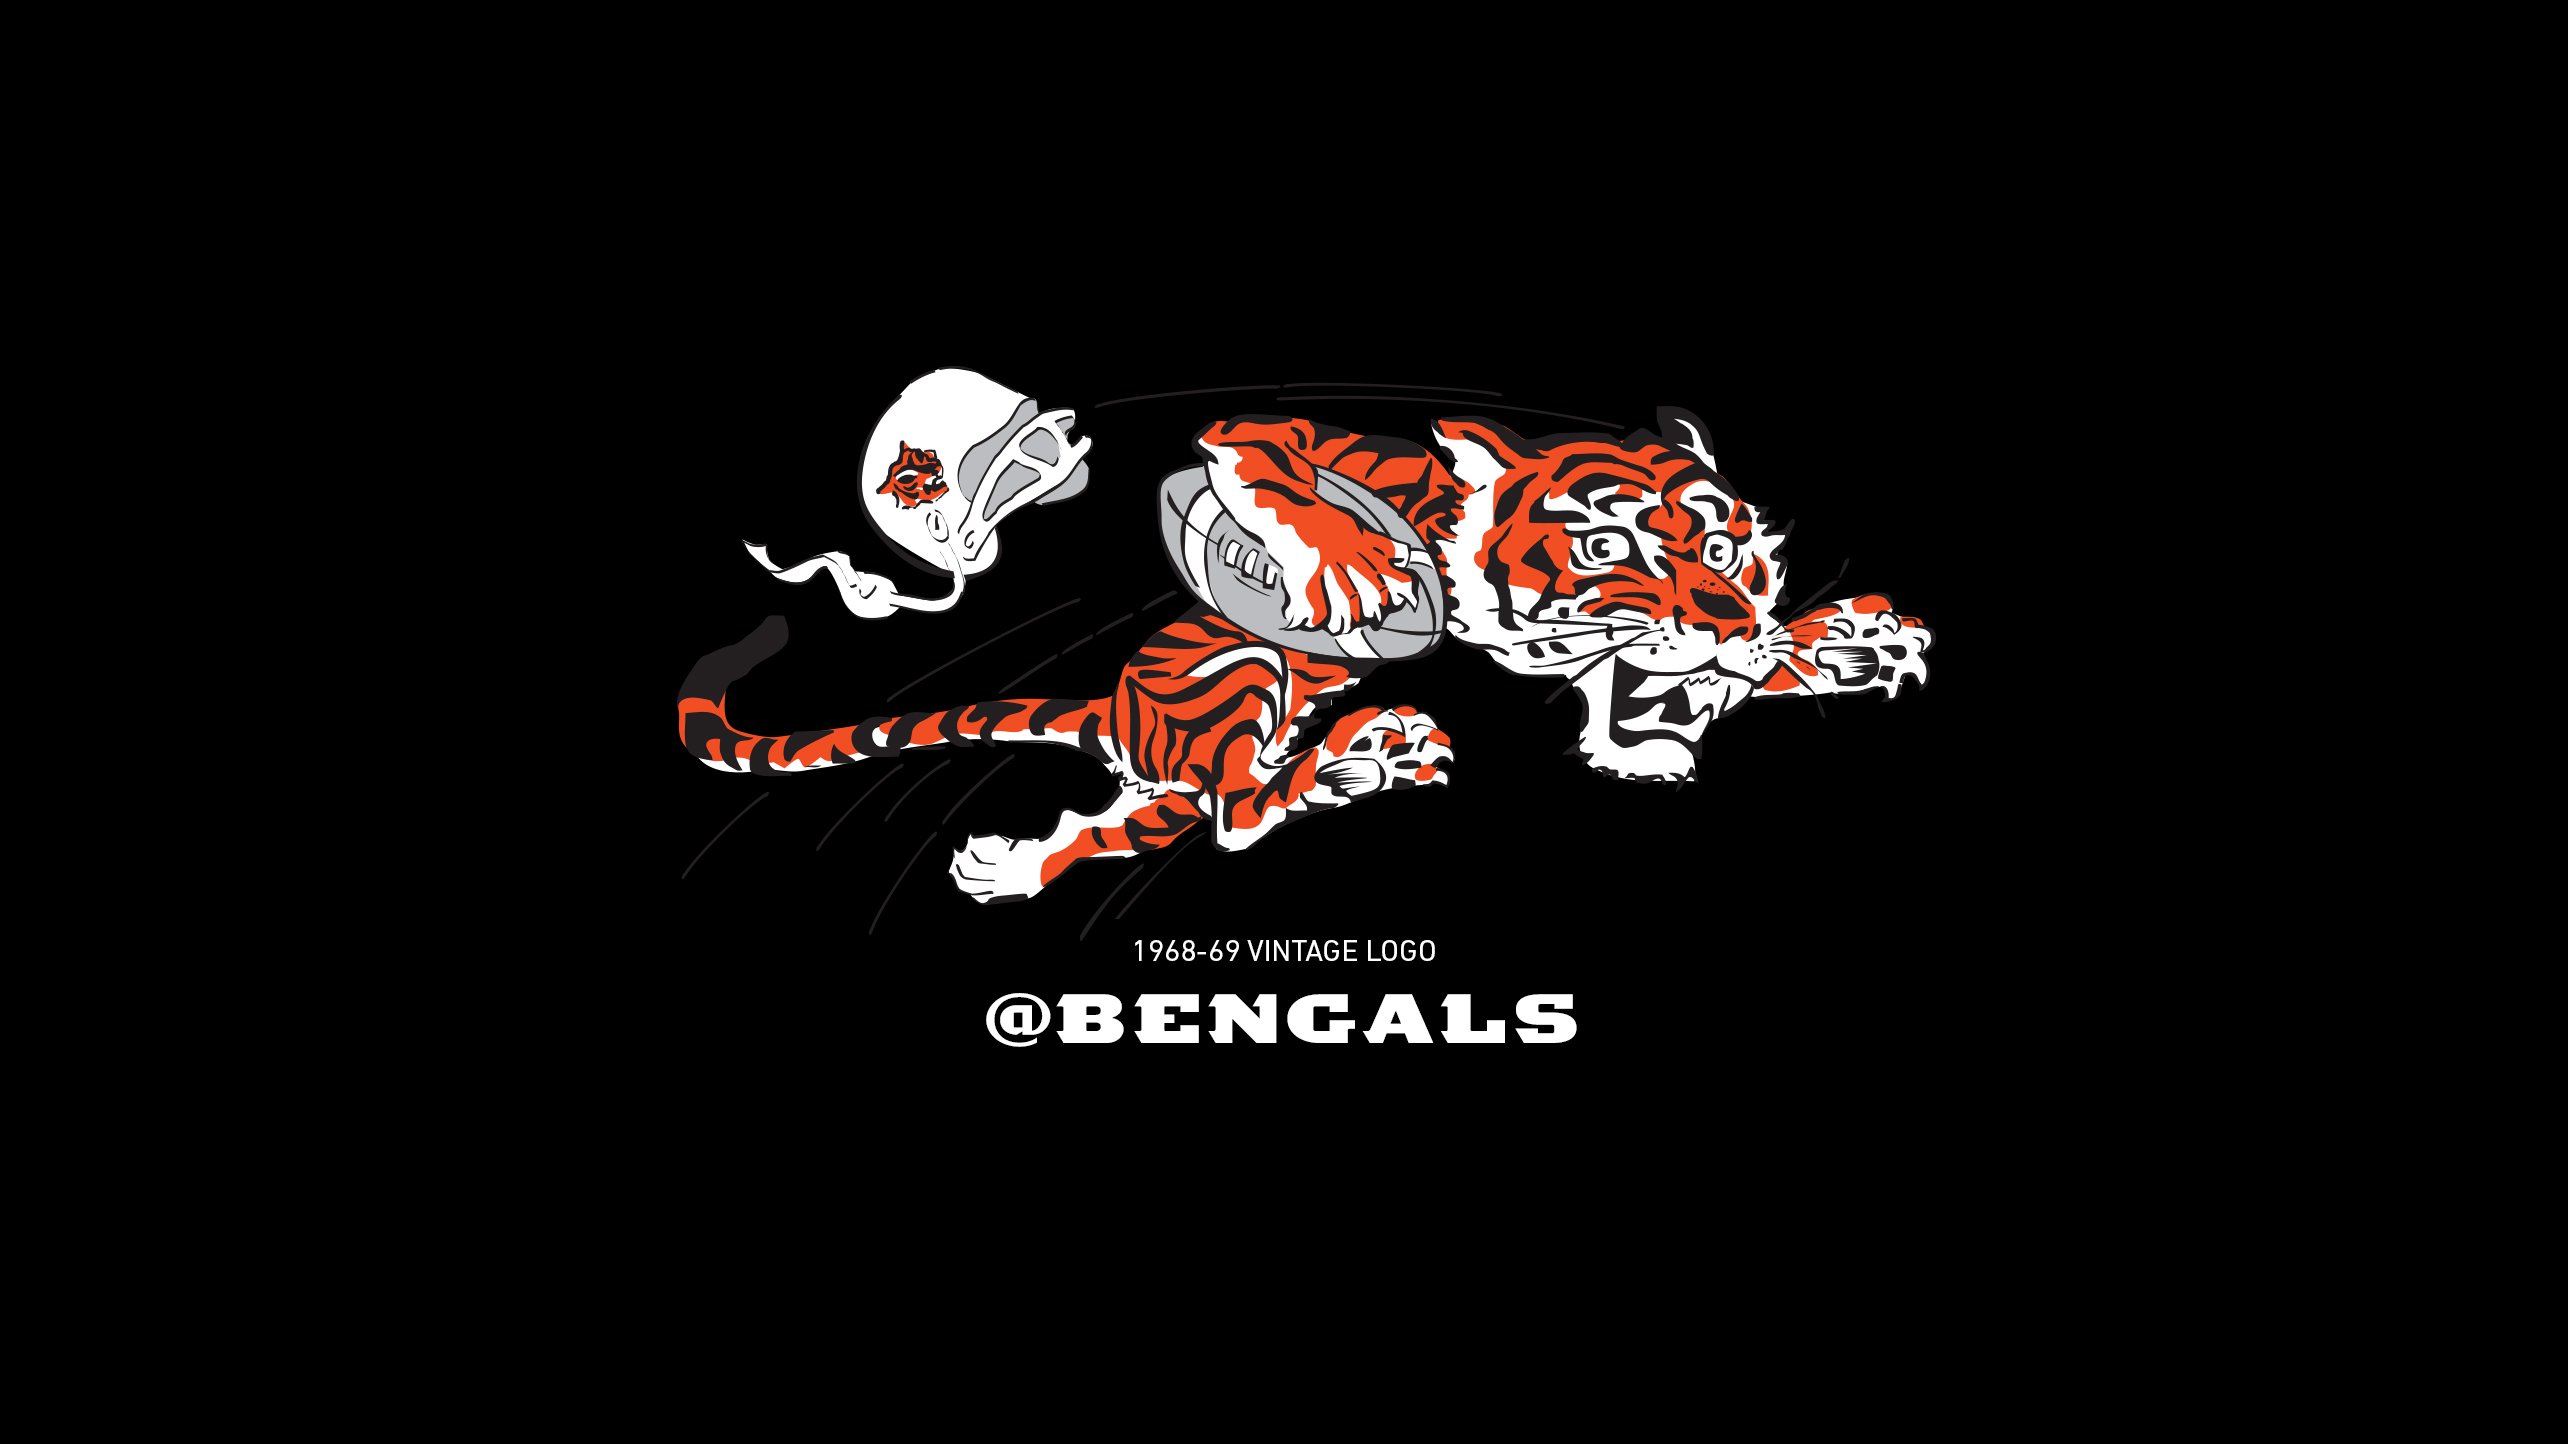 Free download Cincinnati Bengals Fans Wallpaper Bengalscom [2568x1444] for your Desktop, Mobile & Tablet. Explore Bengals Logo Wallpaper. Bengals Logo Wallpaper, Cincinnati Bengals Logo Wallpaper, Bengals Wallpaper